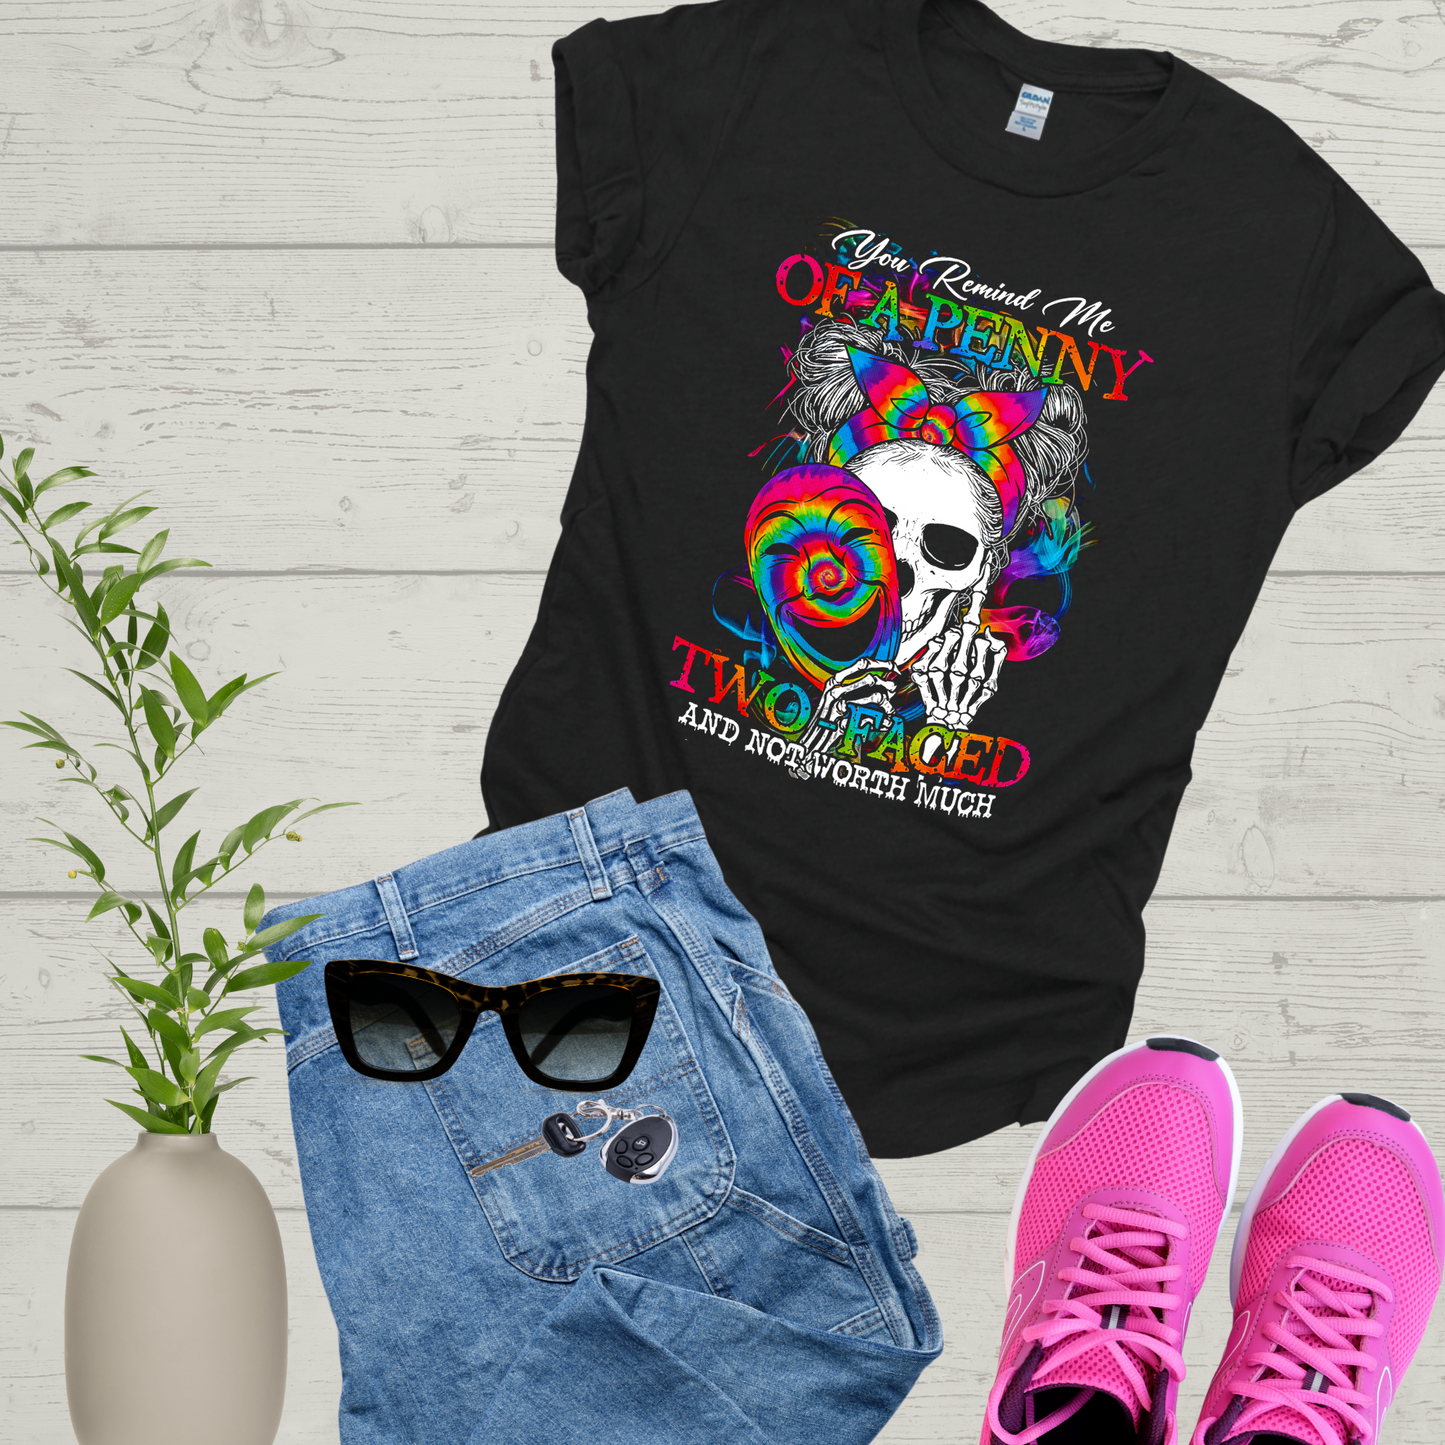 Two Faced Skull Middle Finger, Adult Humor Skull, Skeleton T-shirt